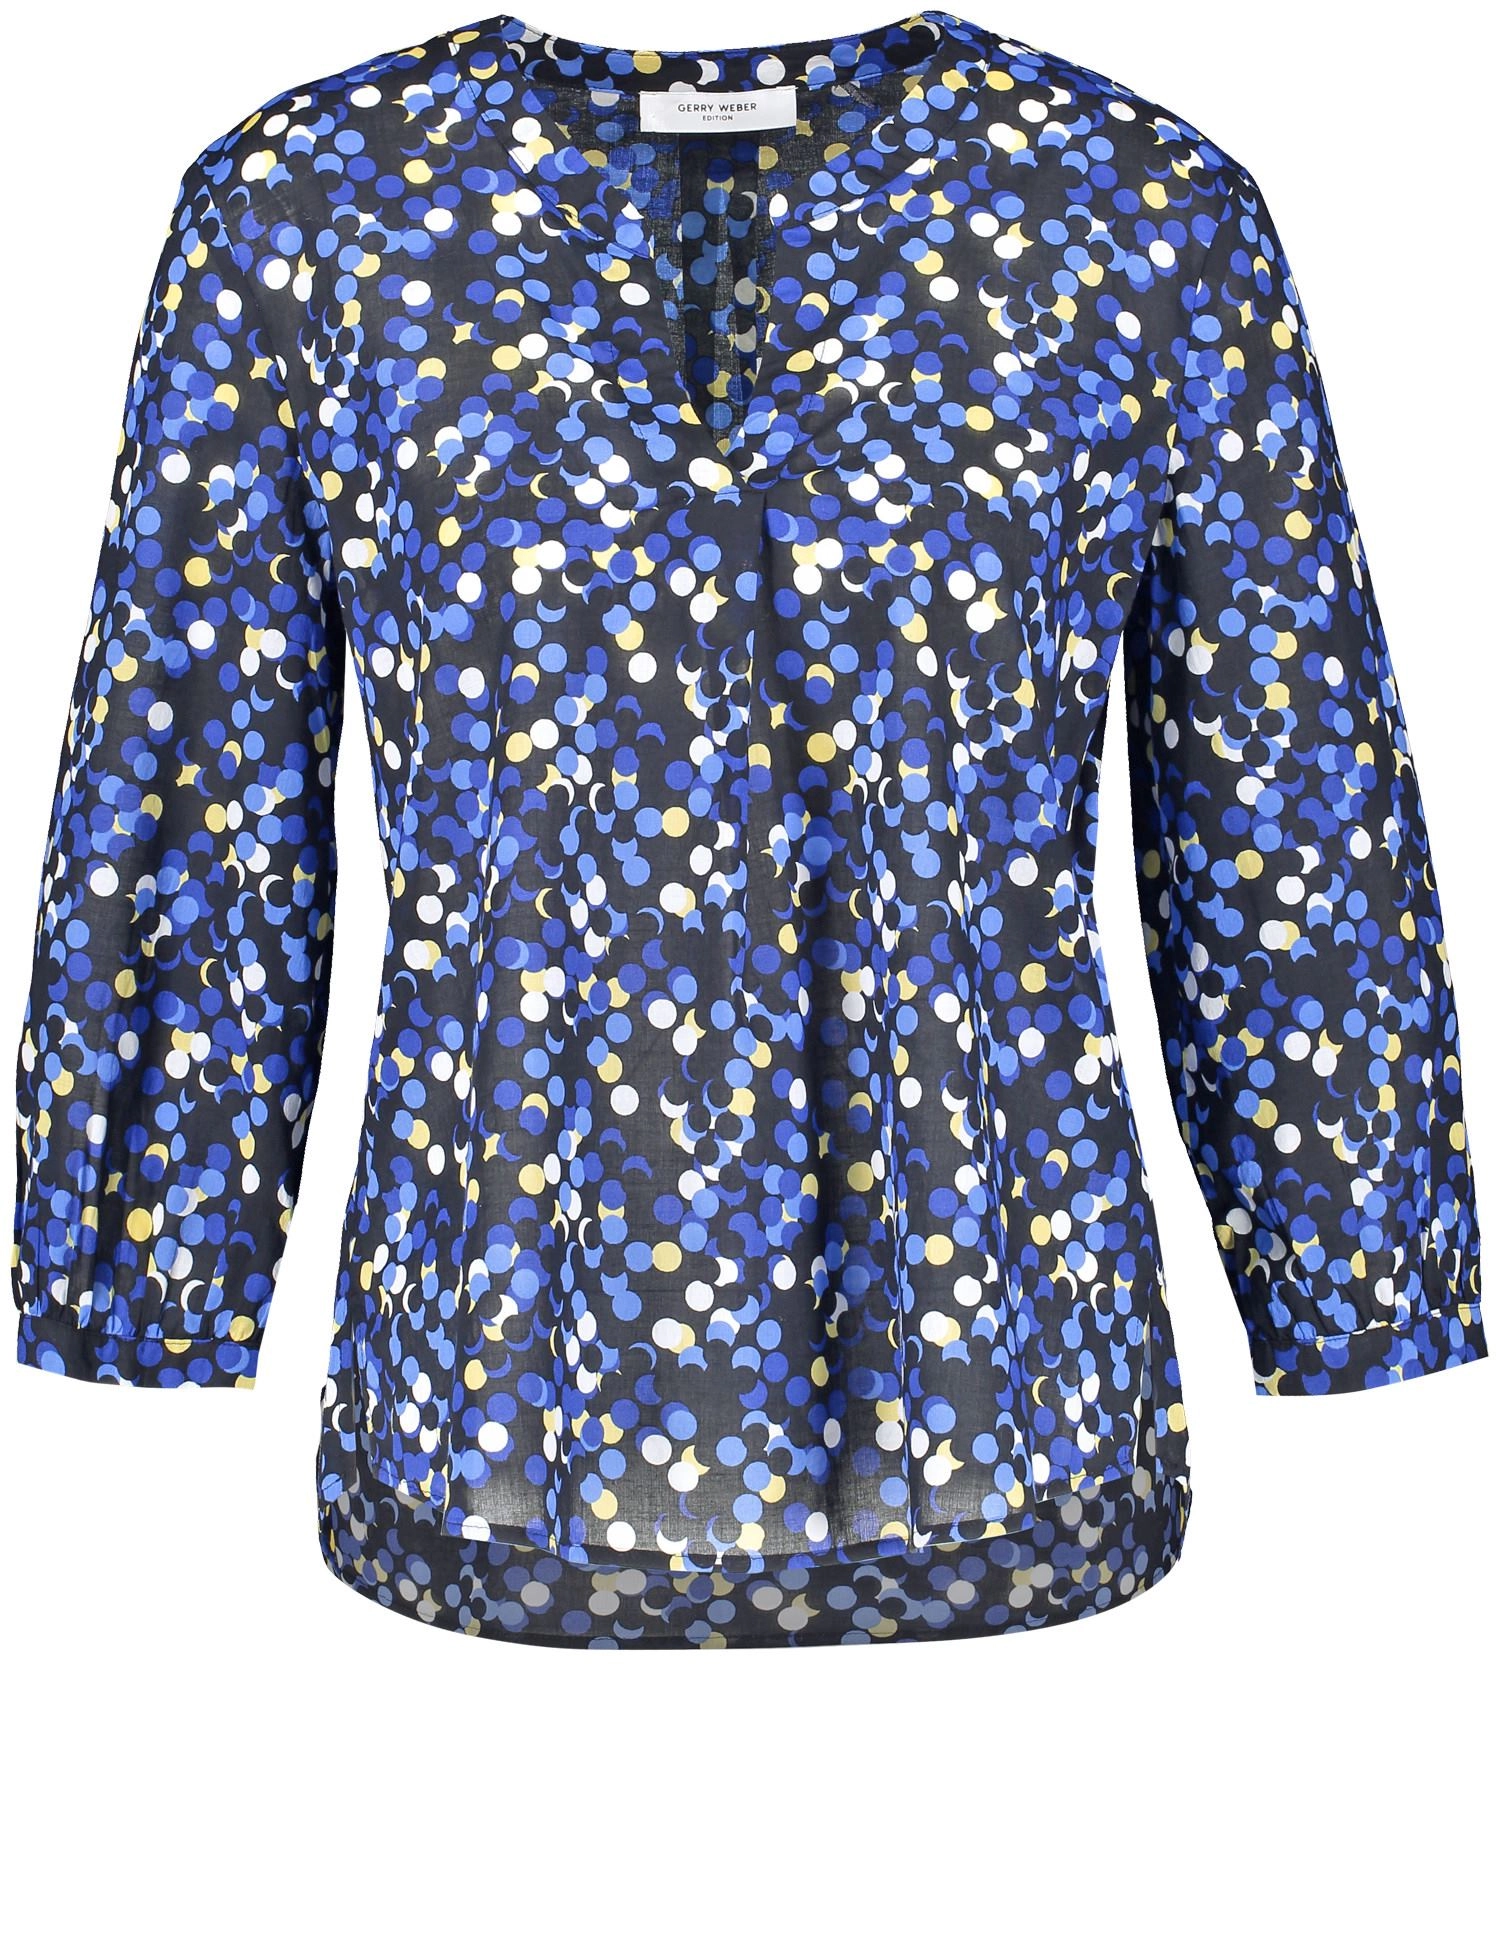 Блузка из 🏷️ цвета со синего WEBER купить 1-2231-965015-66427 | Москве. рублей в 5150 органического хлопка GERRY скидкой Цена